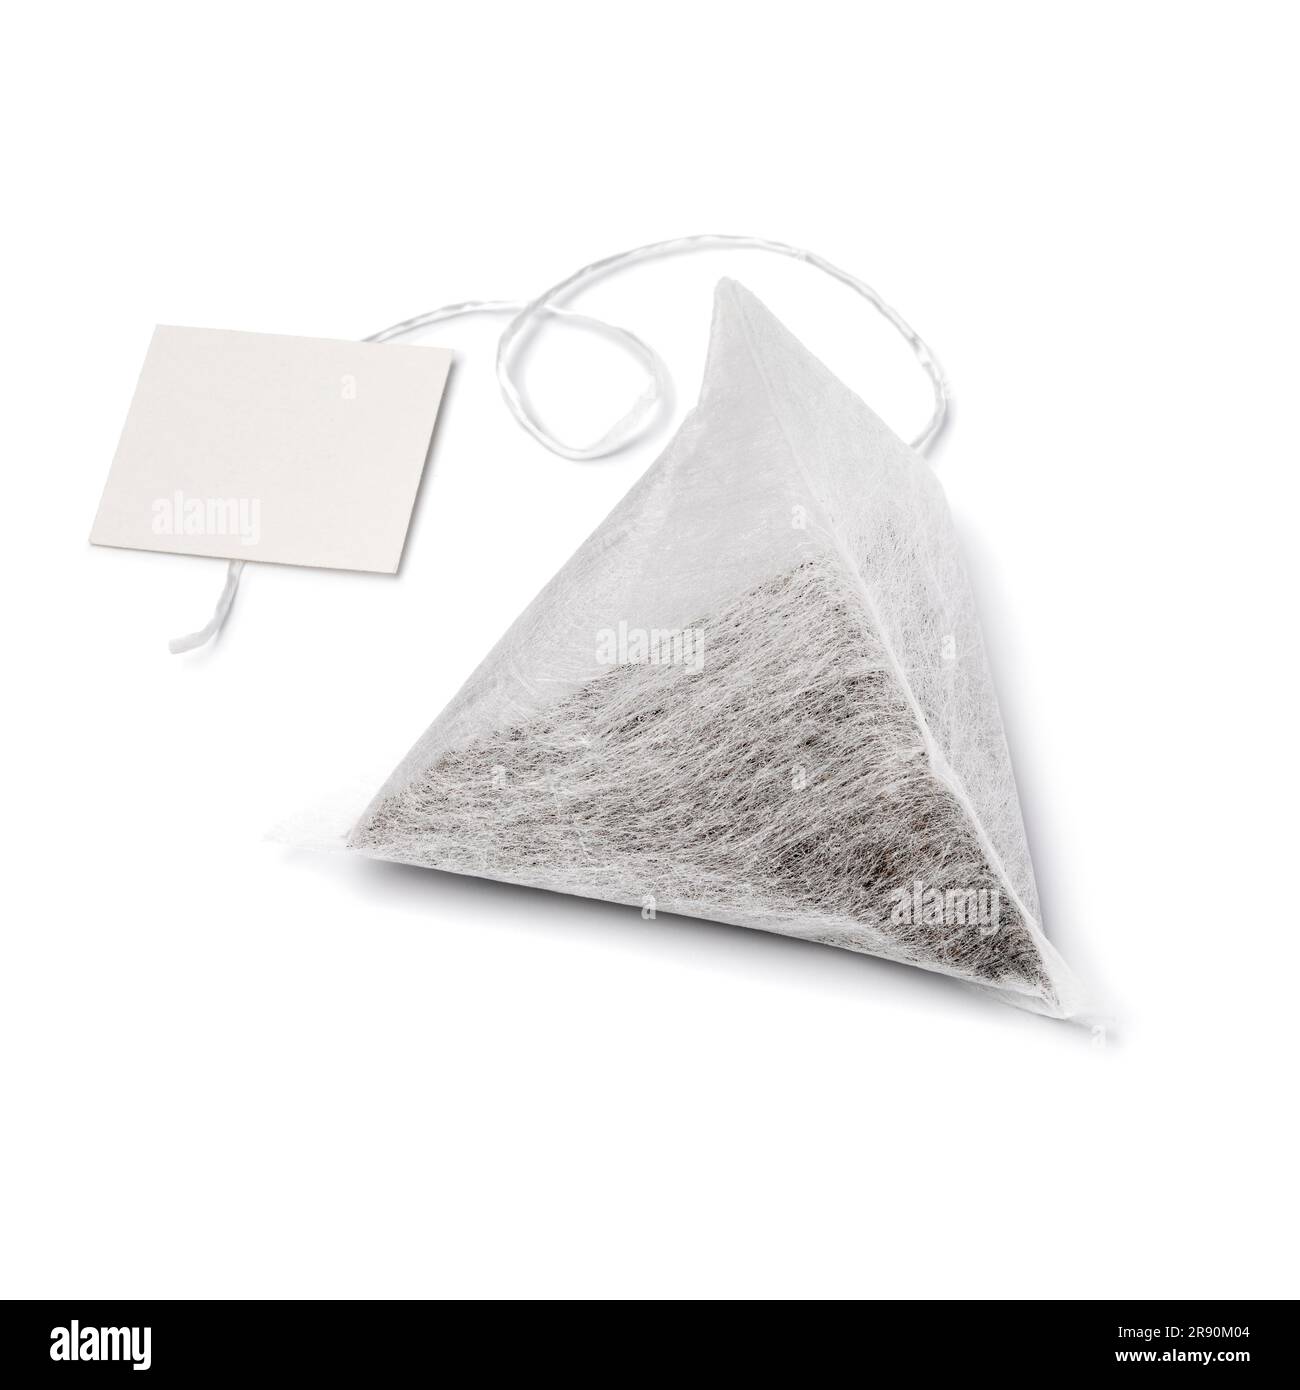 Sachet de thé pyramide simple et étiquette vierge isolée sur fond blanc Banque D'Images